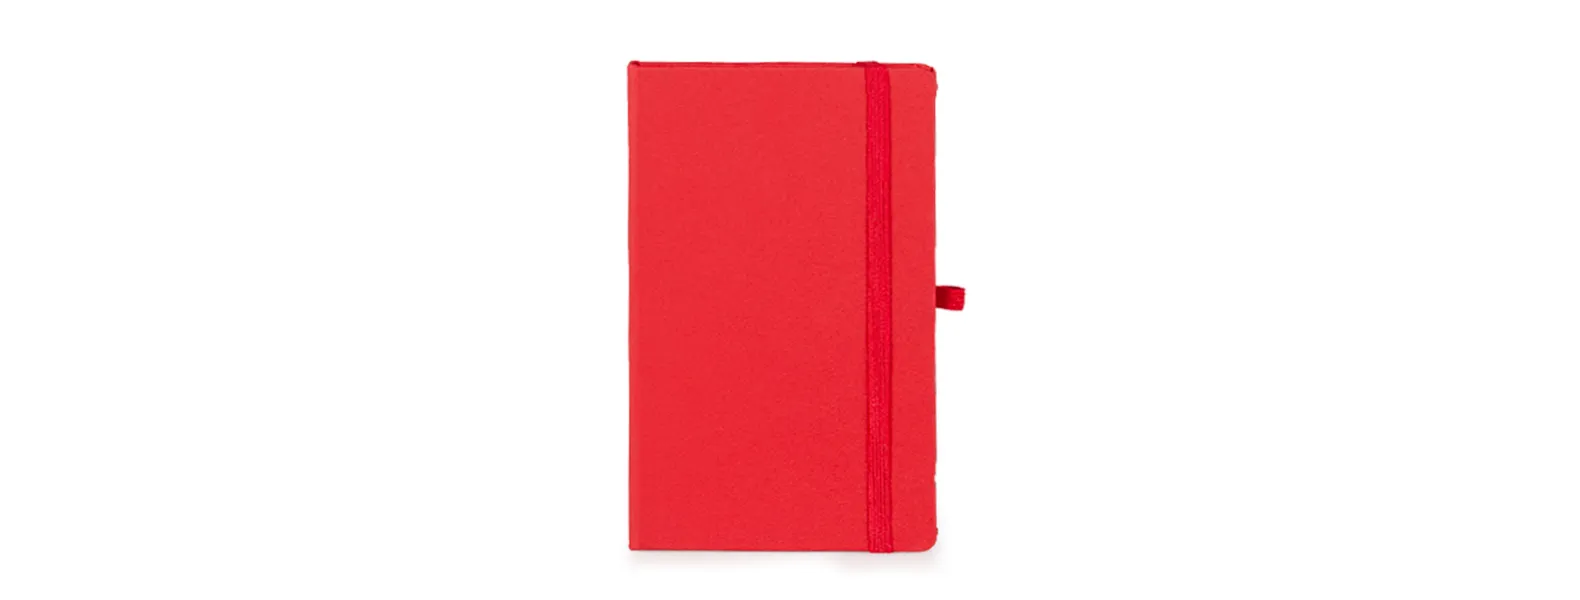 Caderno para anotações vermelho com capa dura. Conta com 80 folhas não pautadas, marcador de página, porta caneta e elástico para fechamento. Gramatura da folha de 70 g/m2.